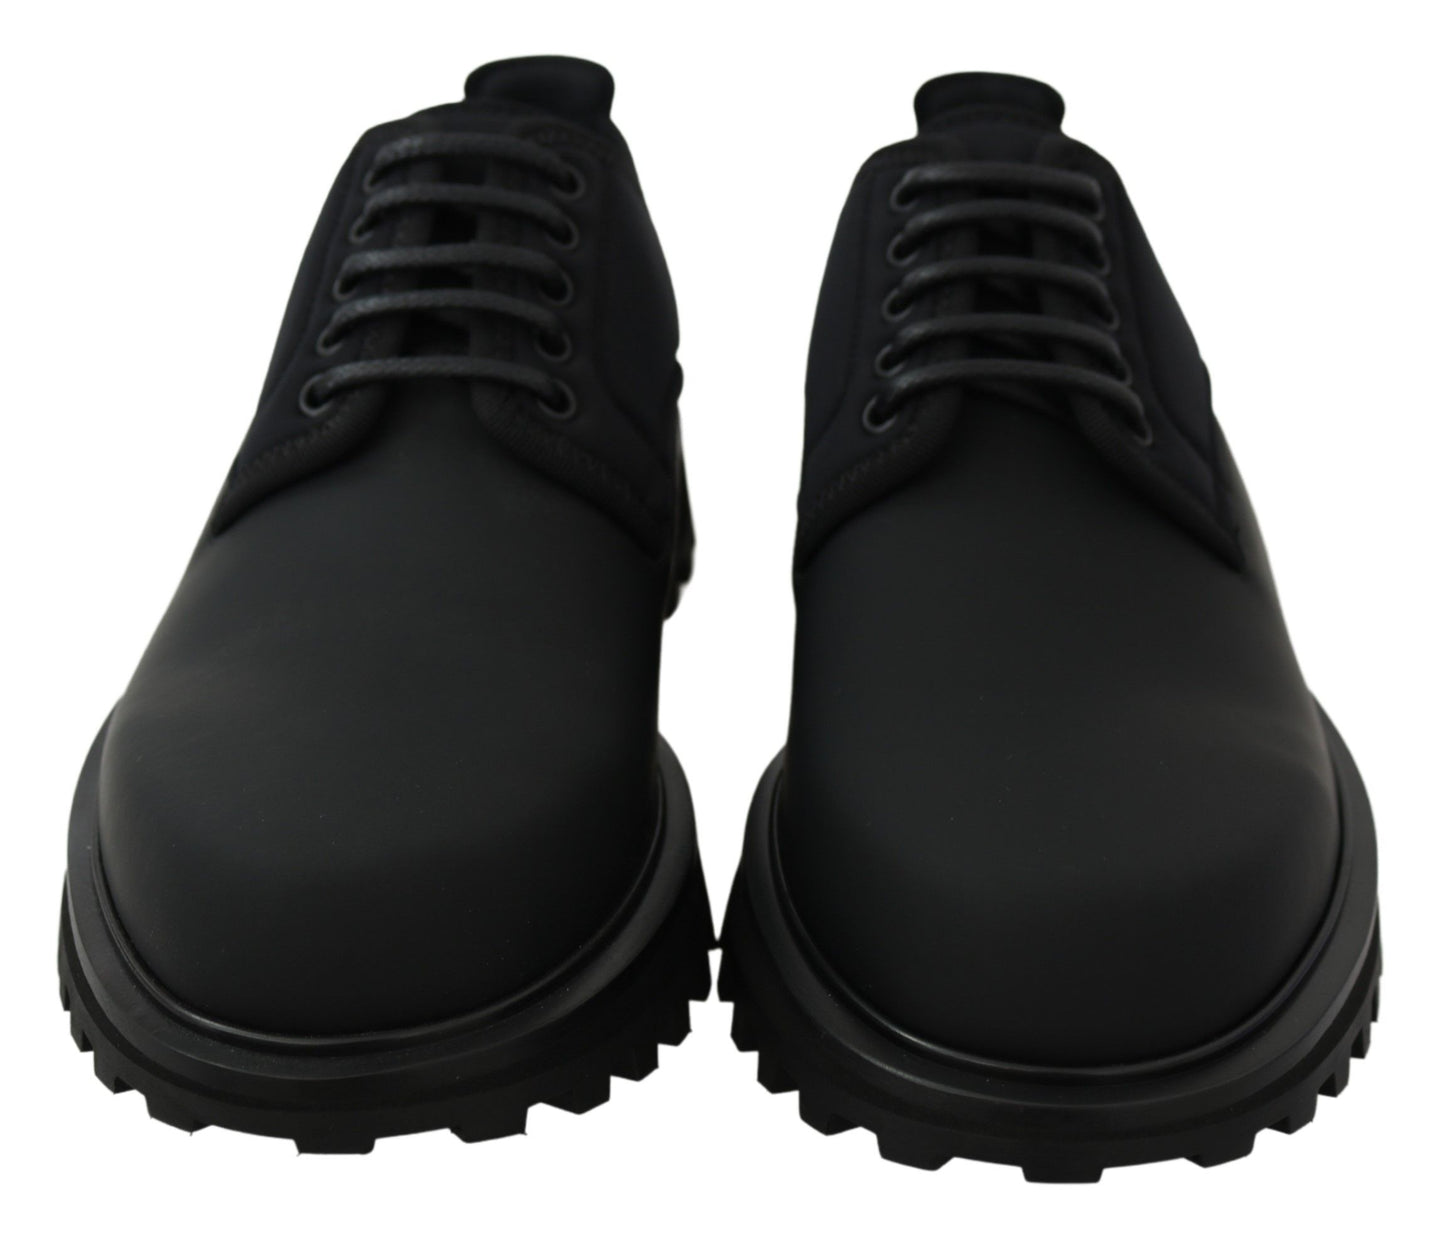 Elegant Black Calfskin Derby Shoes